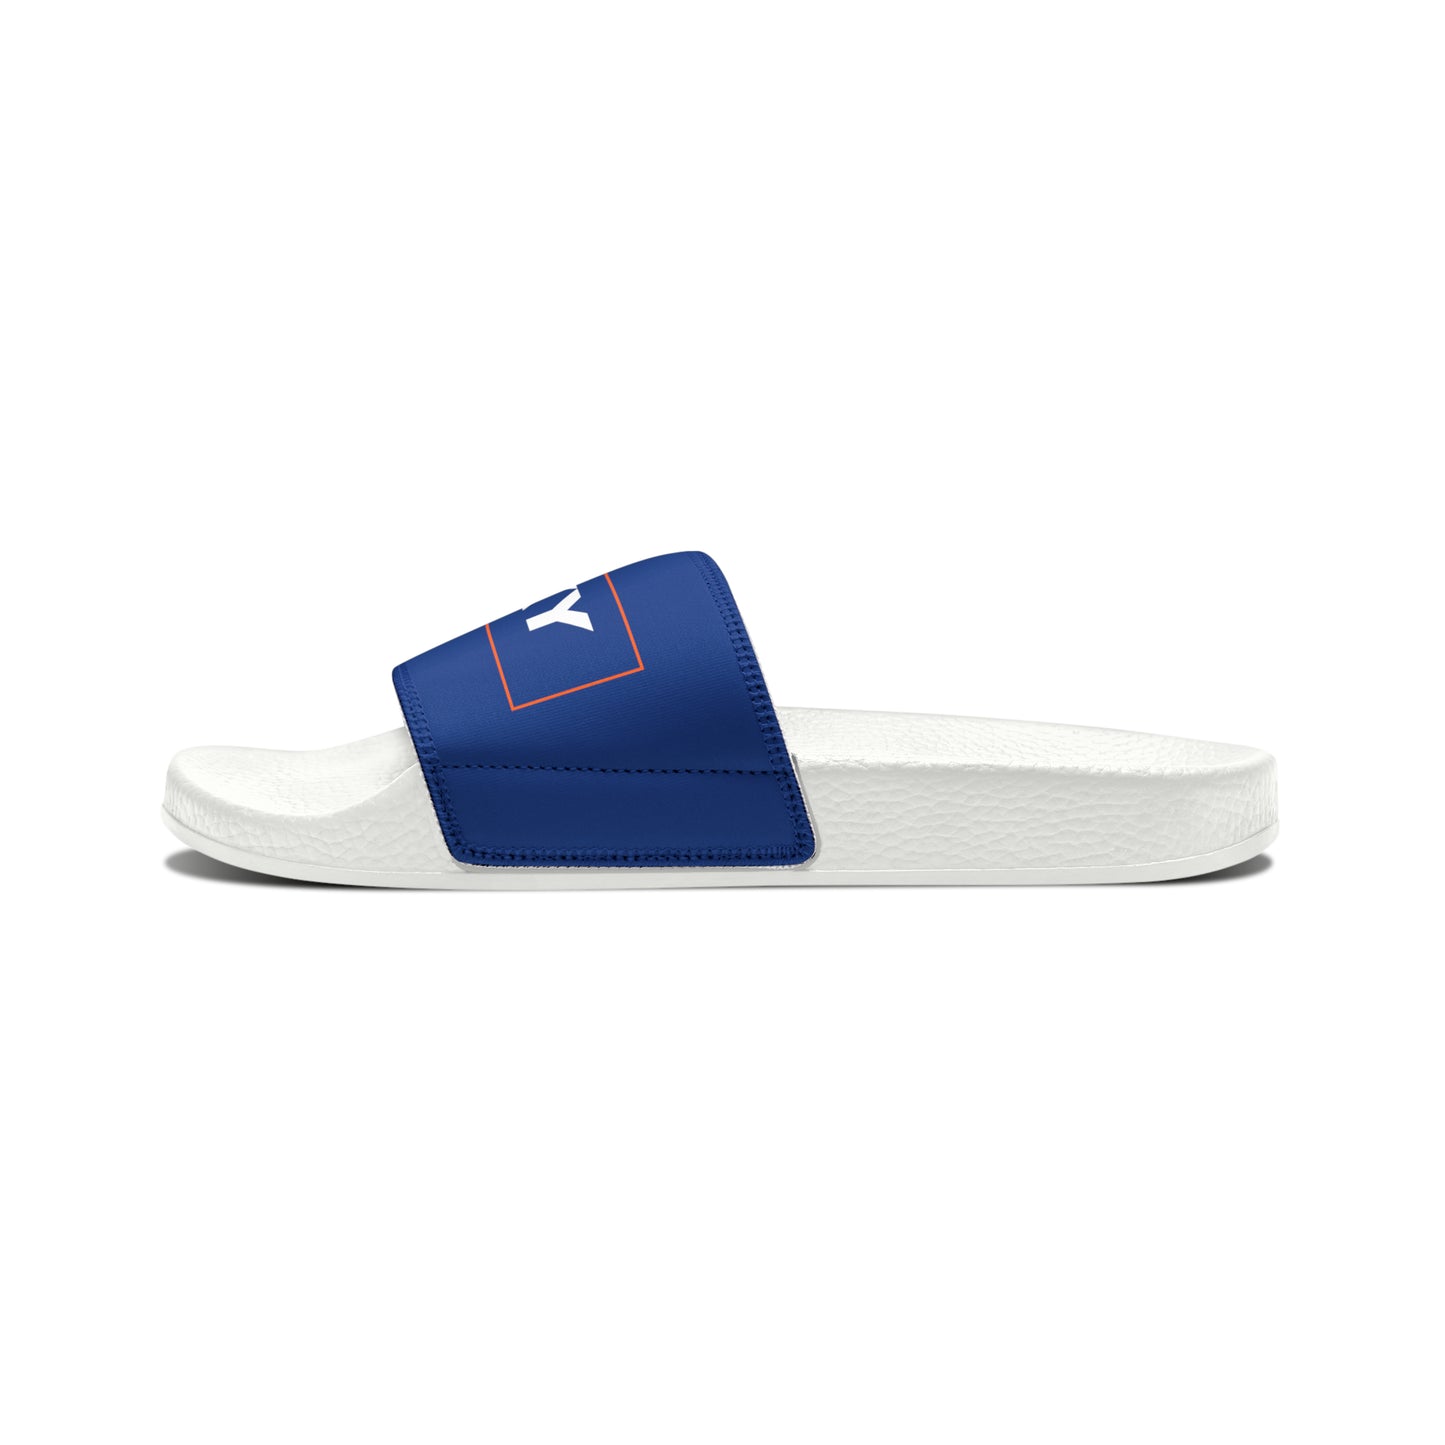 Women's HLKY Logo Slide Sandals, Dark Blue